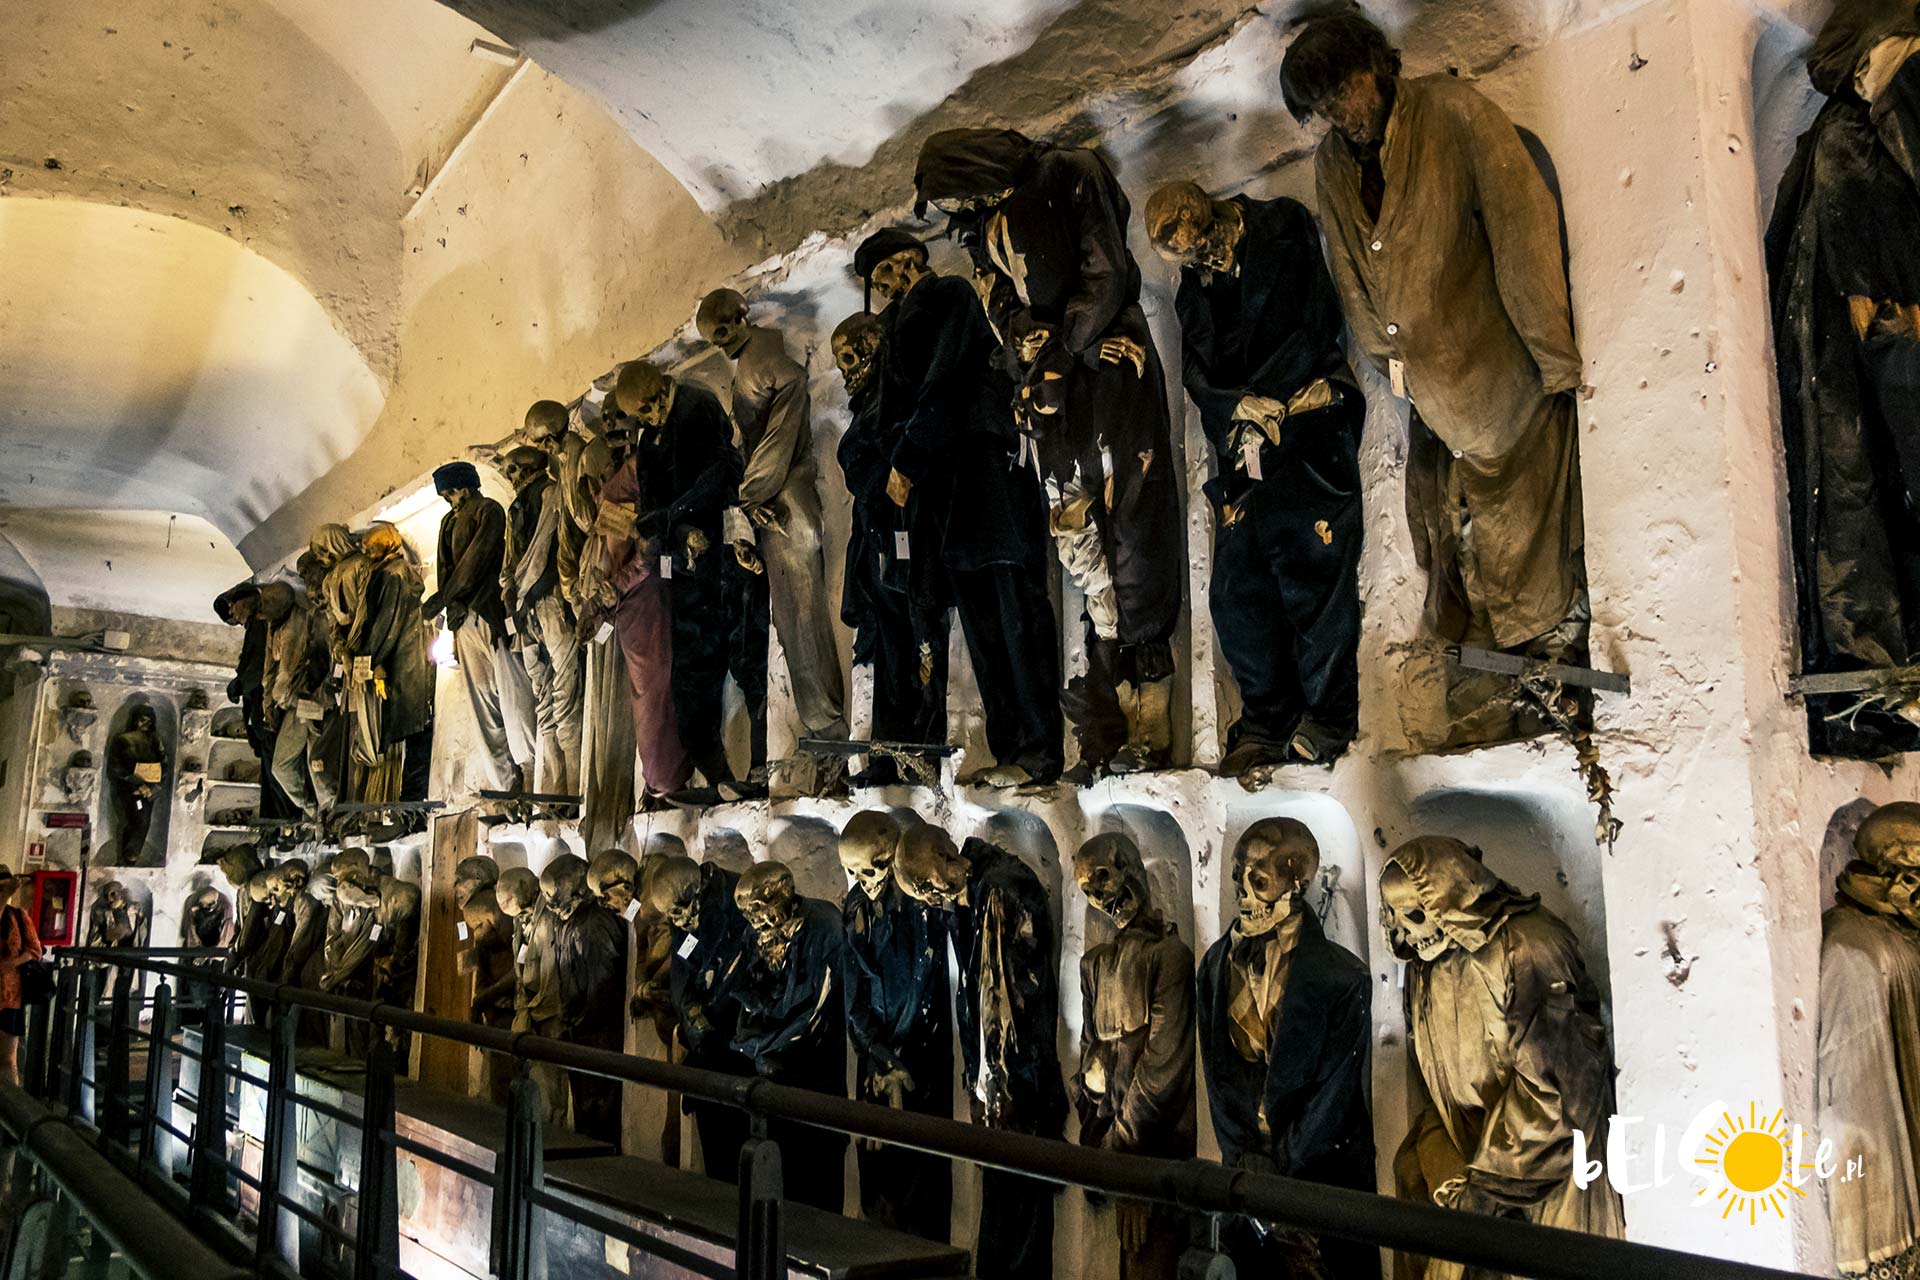 Catacombe dei Cappuccini